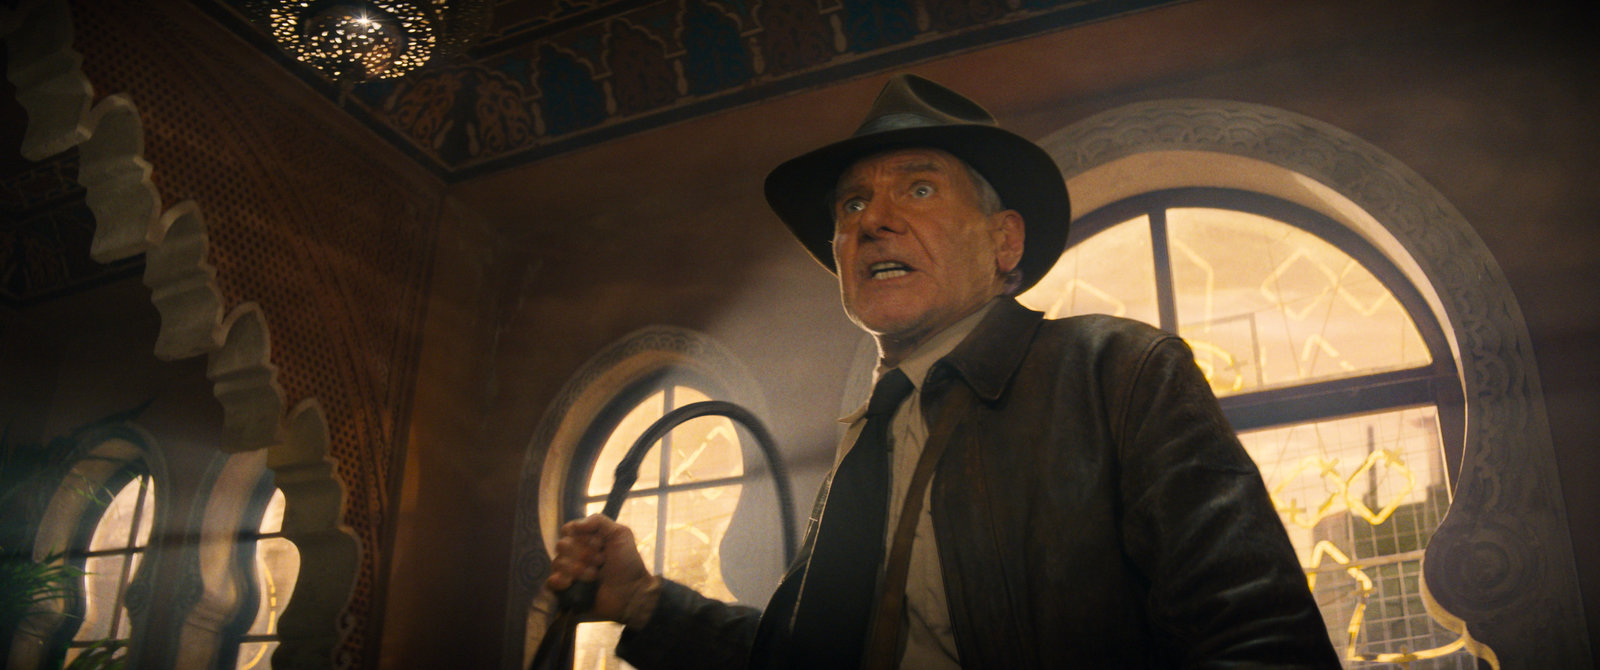 Indiana Jones und das Rad des Schicksals - Uncut Steelbook Edition (4K Ultra HD+blu-ray)